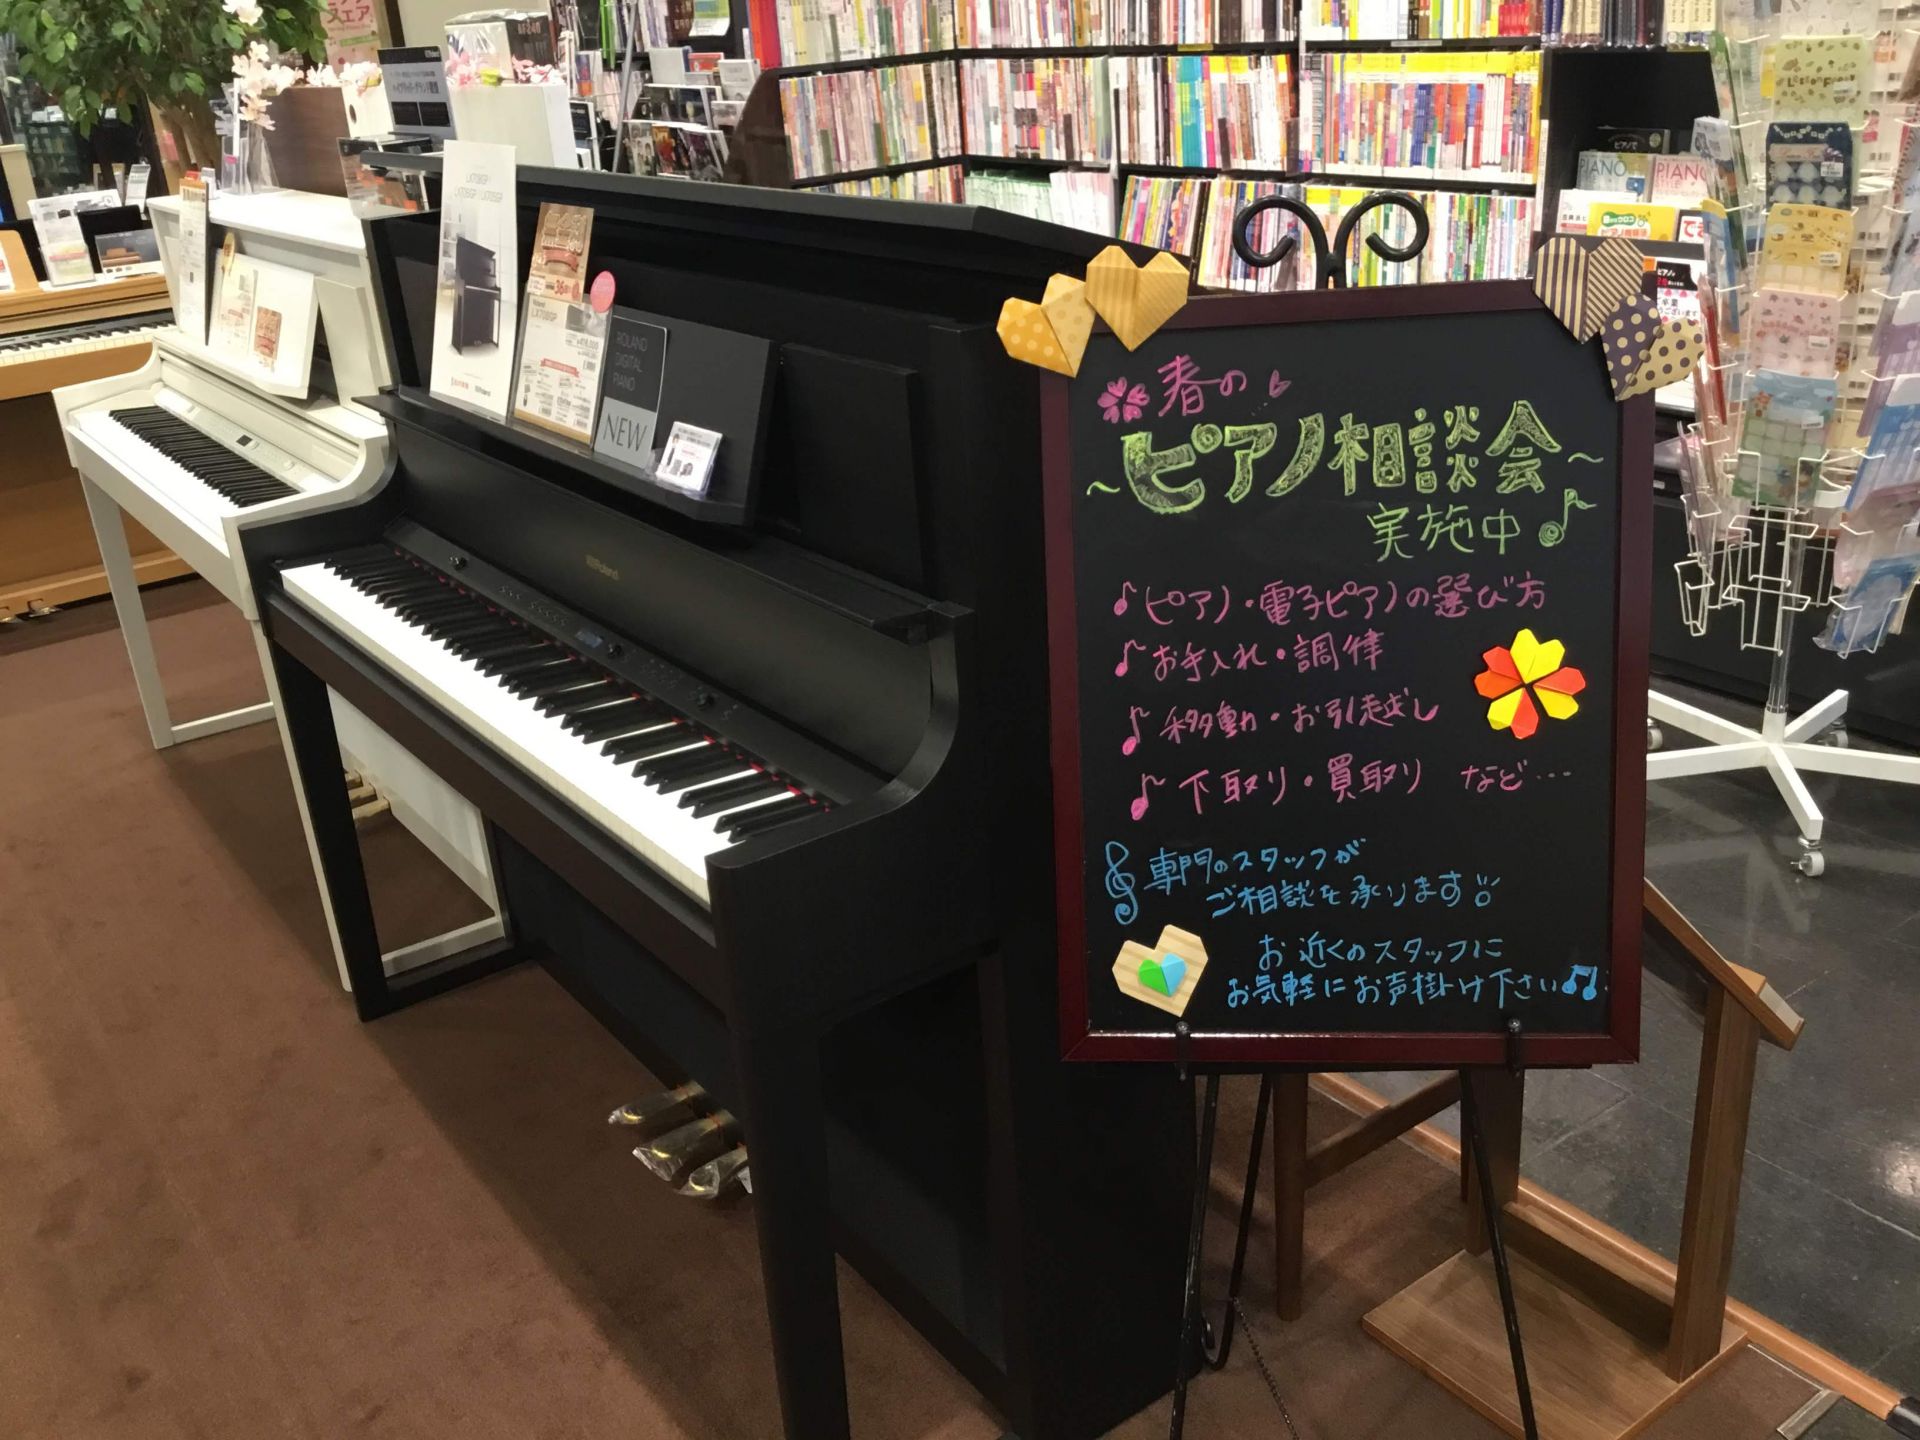 こんにちは！宮崎店ピアノ担当の佐々良です。]] ただ今島村楽器では「夏のピアノフェア」を実施致しております。 [!![https://www.shimamura.co.jp/p/campaign/2019summerpianofair/index.html:title=フェアの詳細はこちらをクリック […]